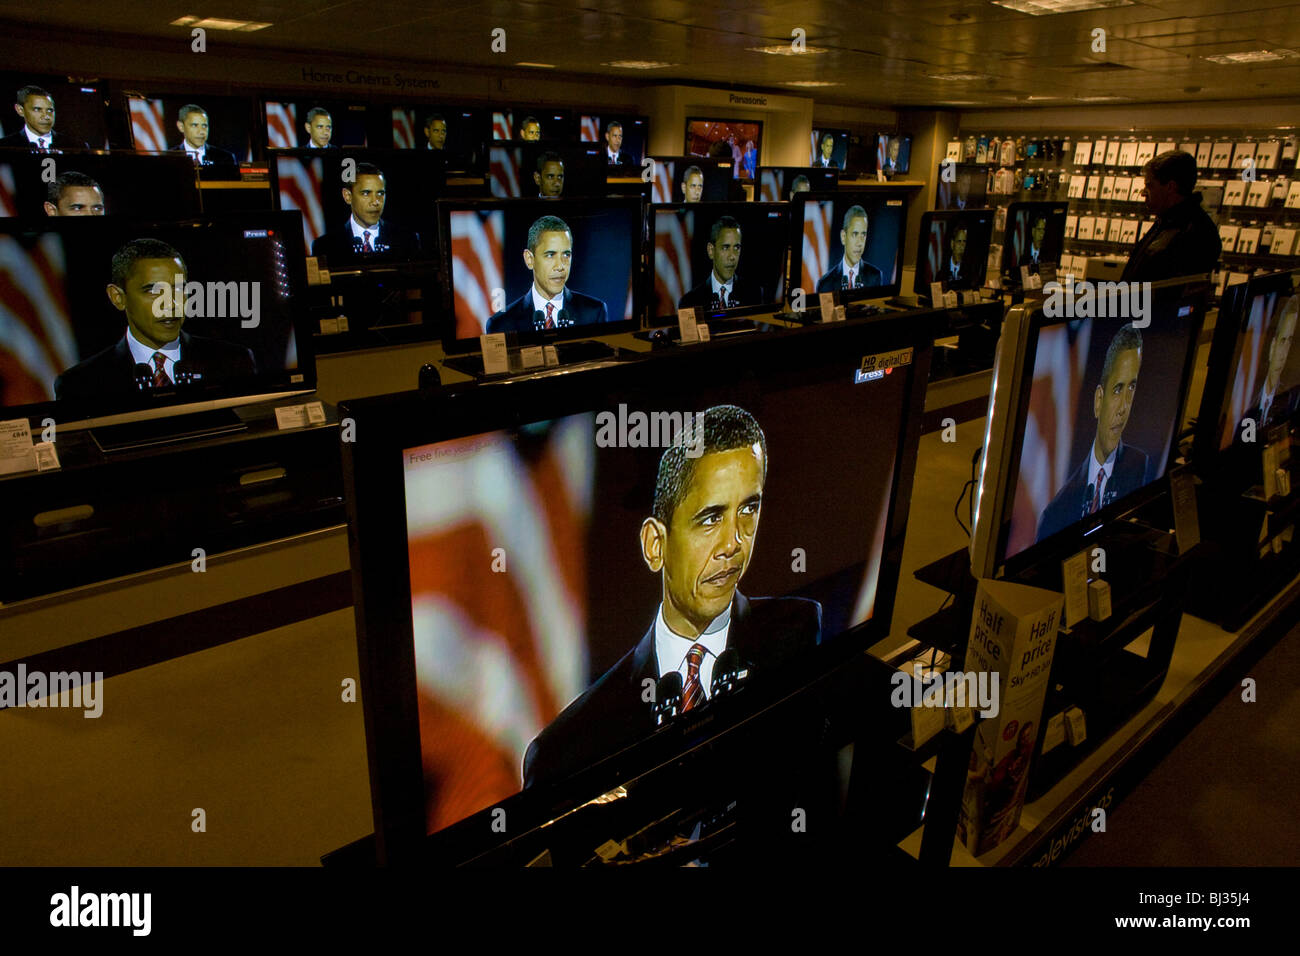 La victoire électorale de Barack Obama donne aux discours sur les écrans de télévision de BBC News sur étage audio de John Lewis department store Banque D'Images